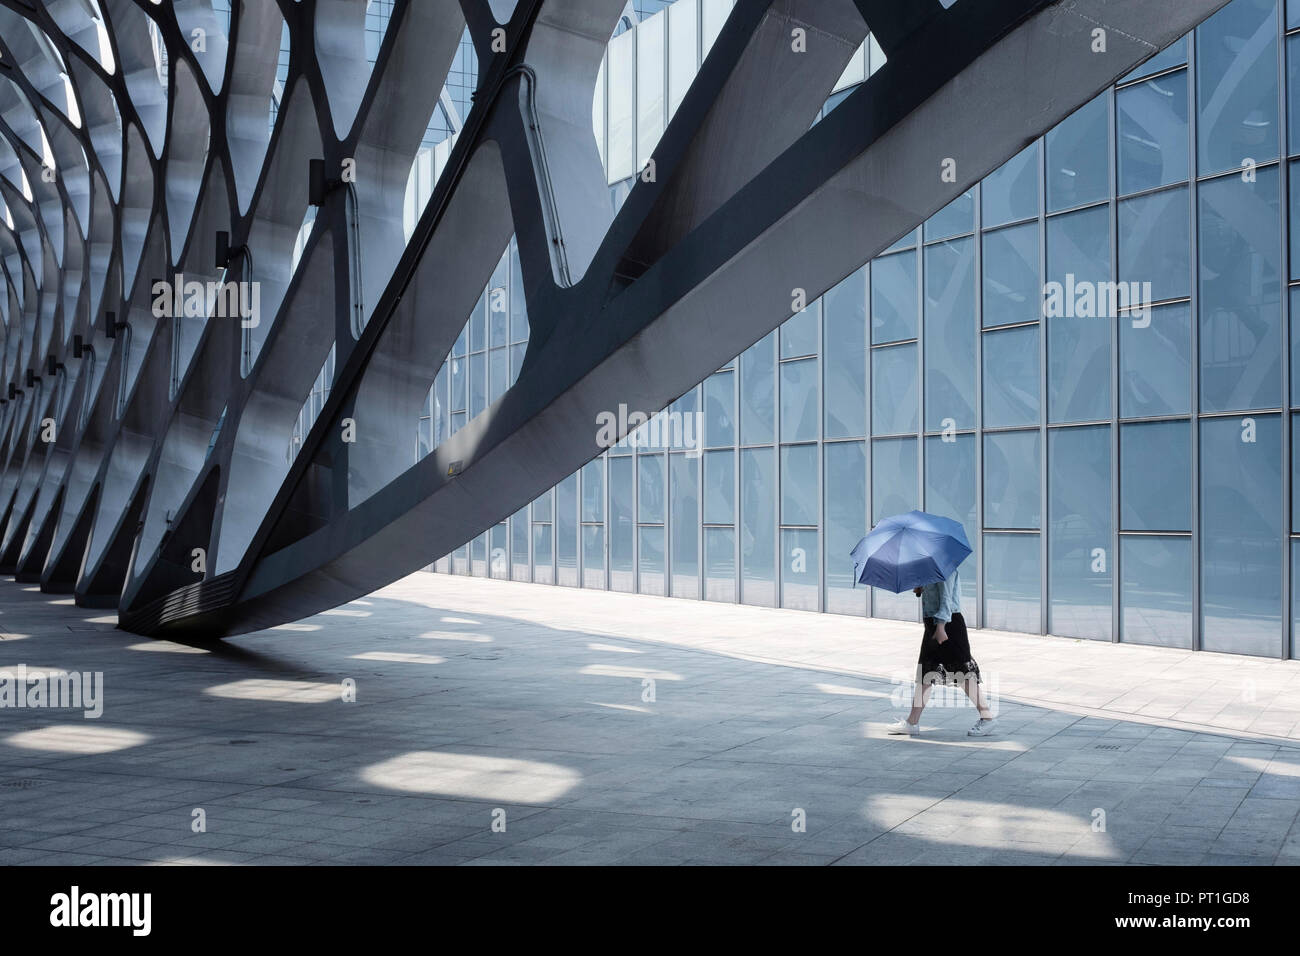 China, Shenzhen, modern architecture and walking woman Stock Photo